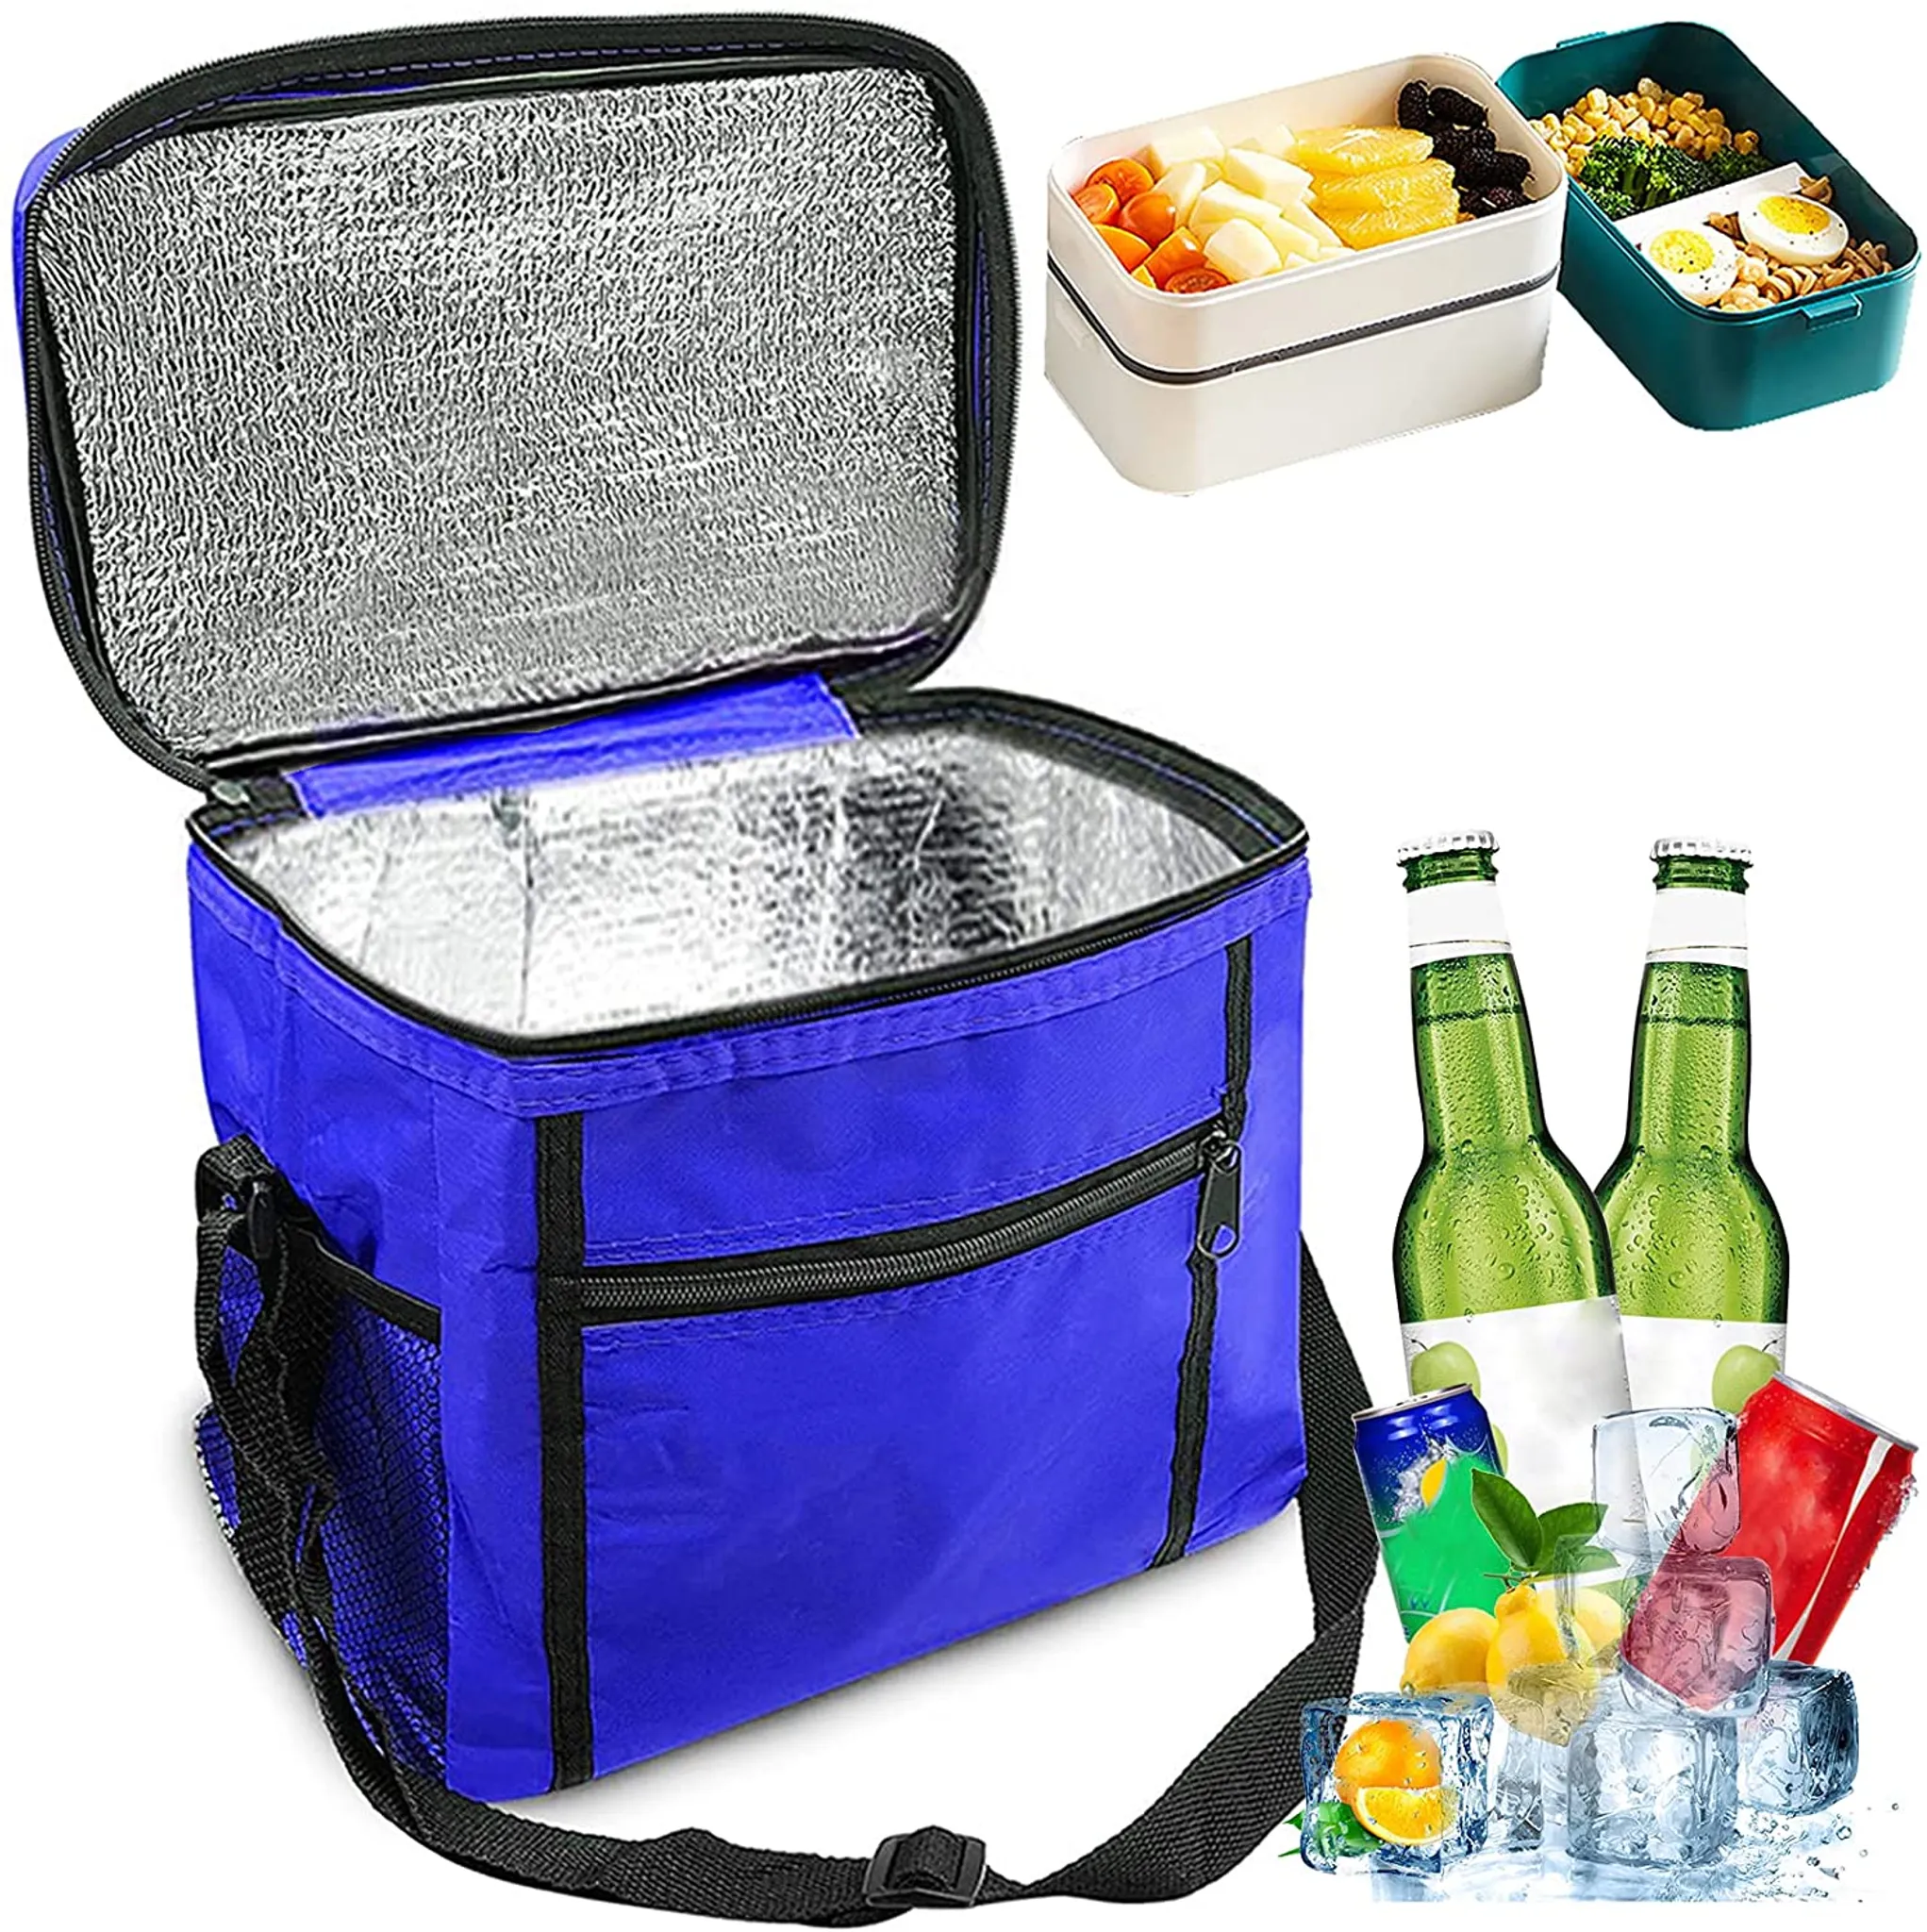 Kühltasche Faltbar, Picknicktasche Kühltasche Thermotasche Klein  Lsoliertasche Lunch Kühltasche Eistasche Lunch Tasche Kühlbox für Picknick